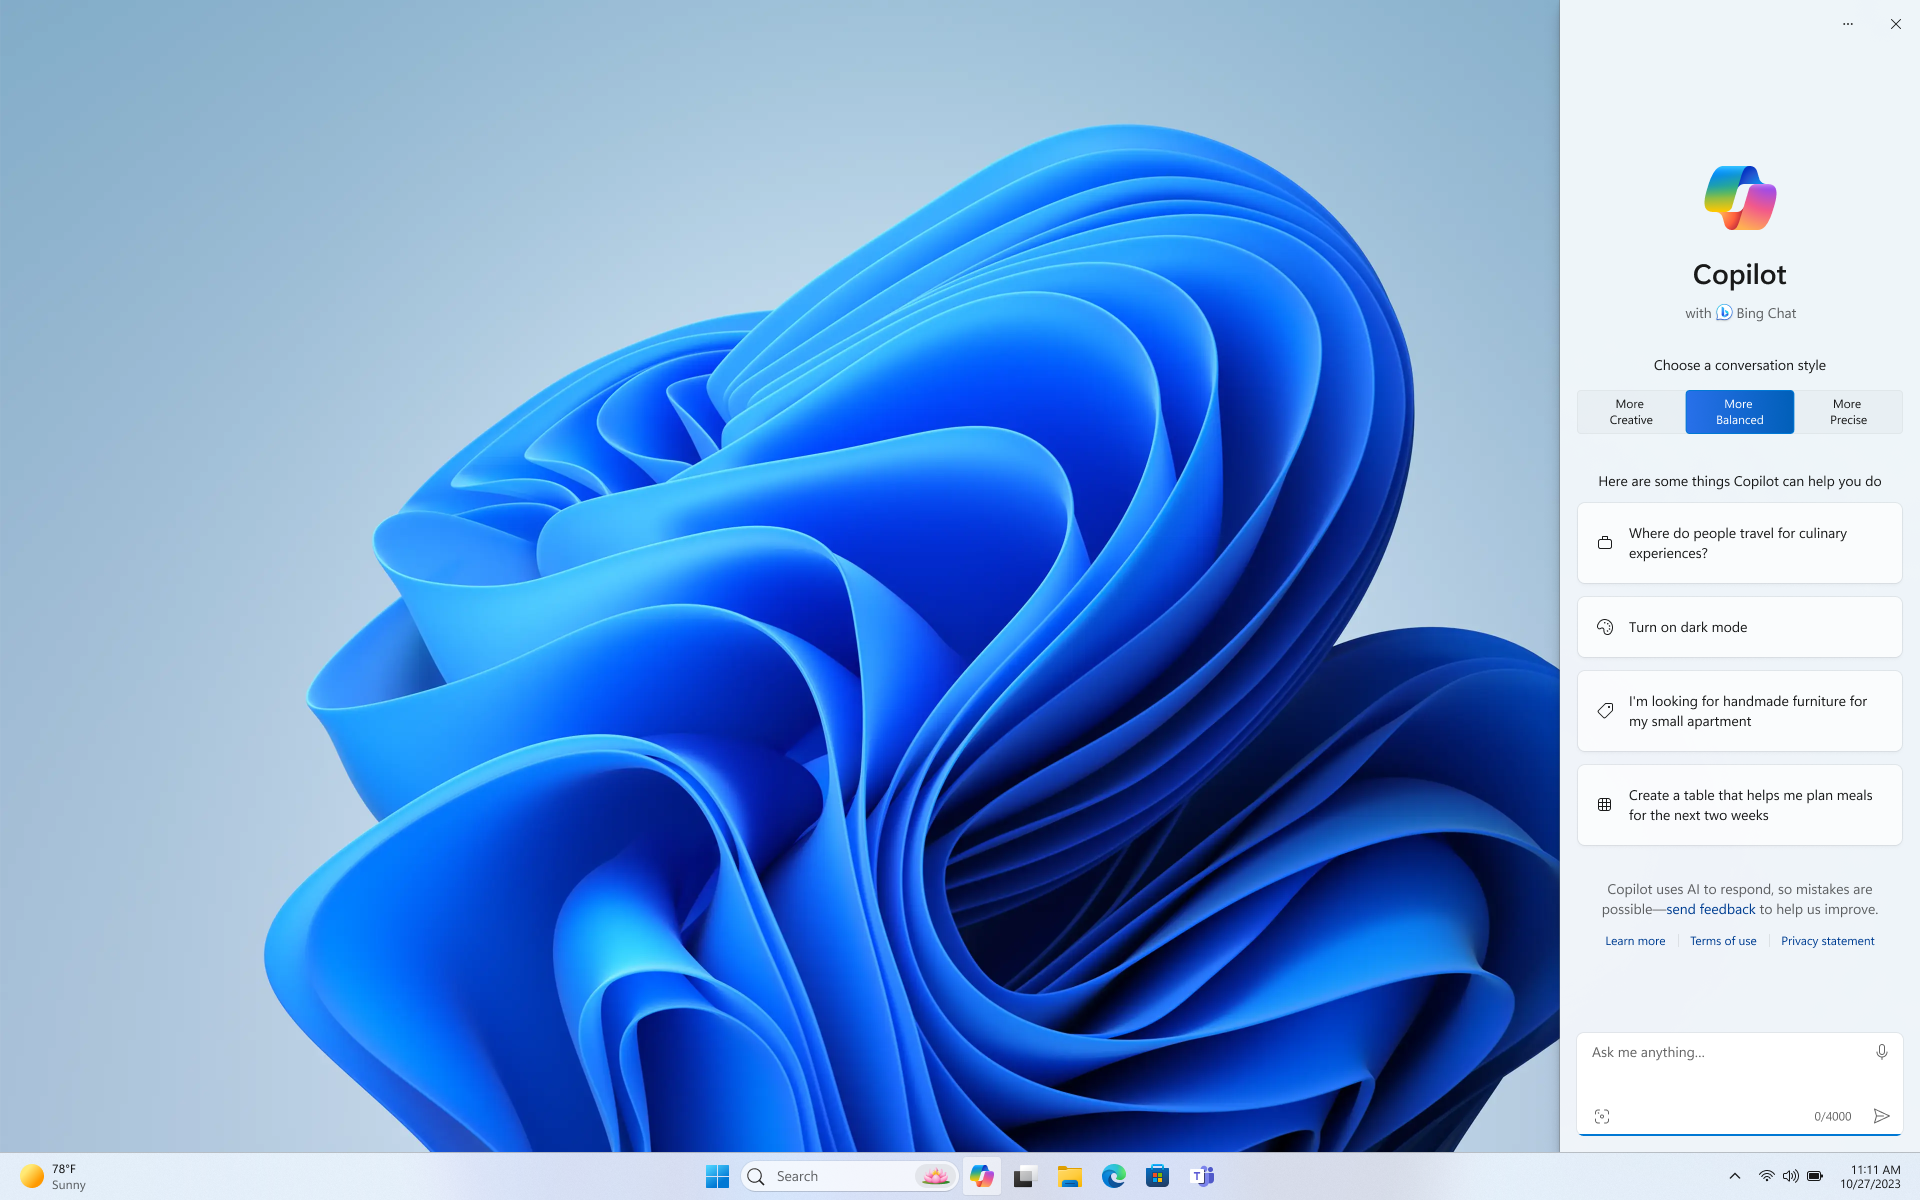 Kuvatõmmis Windowsi töölauast, kus on kuvatud heleda kujundusega Windowsi rakendus Copilot, mis vastab kujundusele.